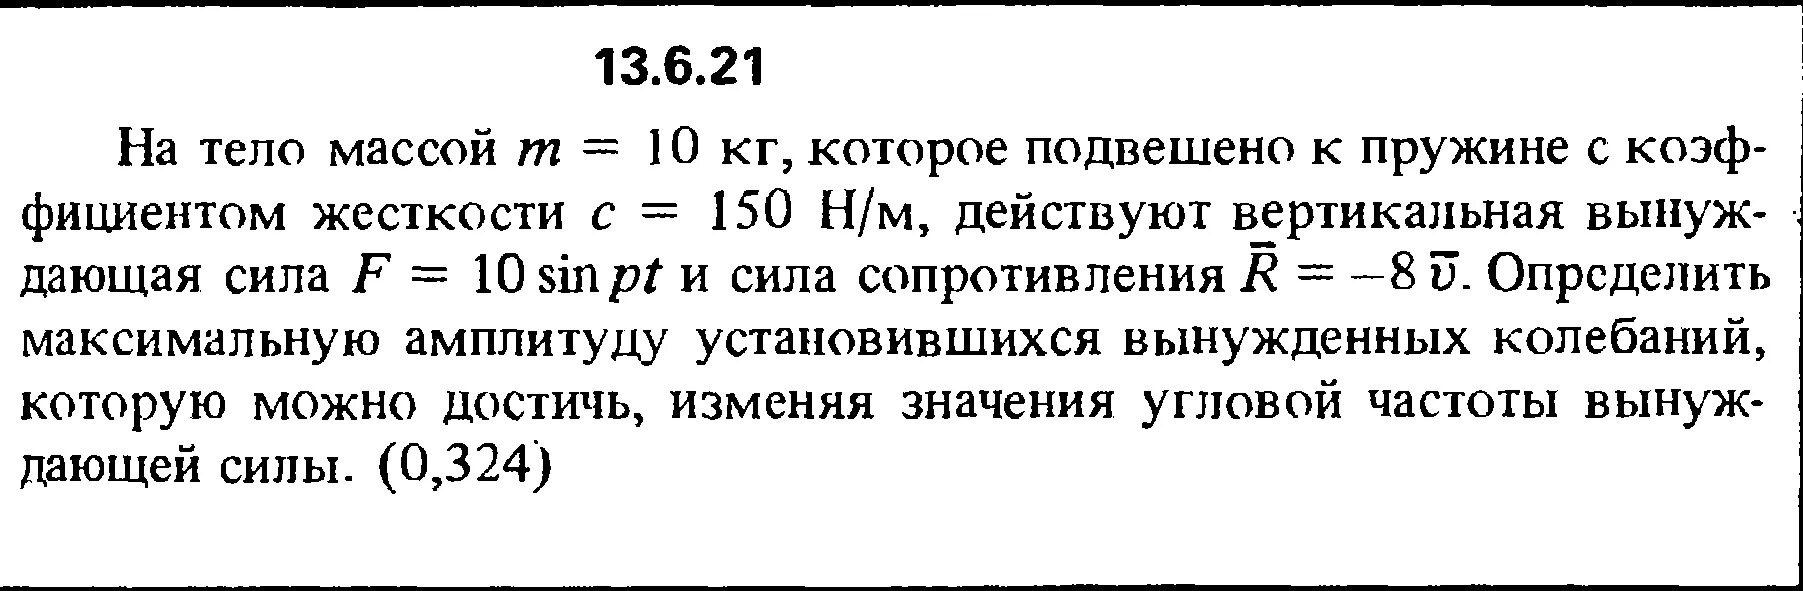 Задача 13.4.13 Кепе. Решение задачи 13.4.15 из сборника Кепе о.э.. Тело массой 10 кг подвешено